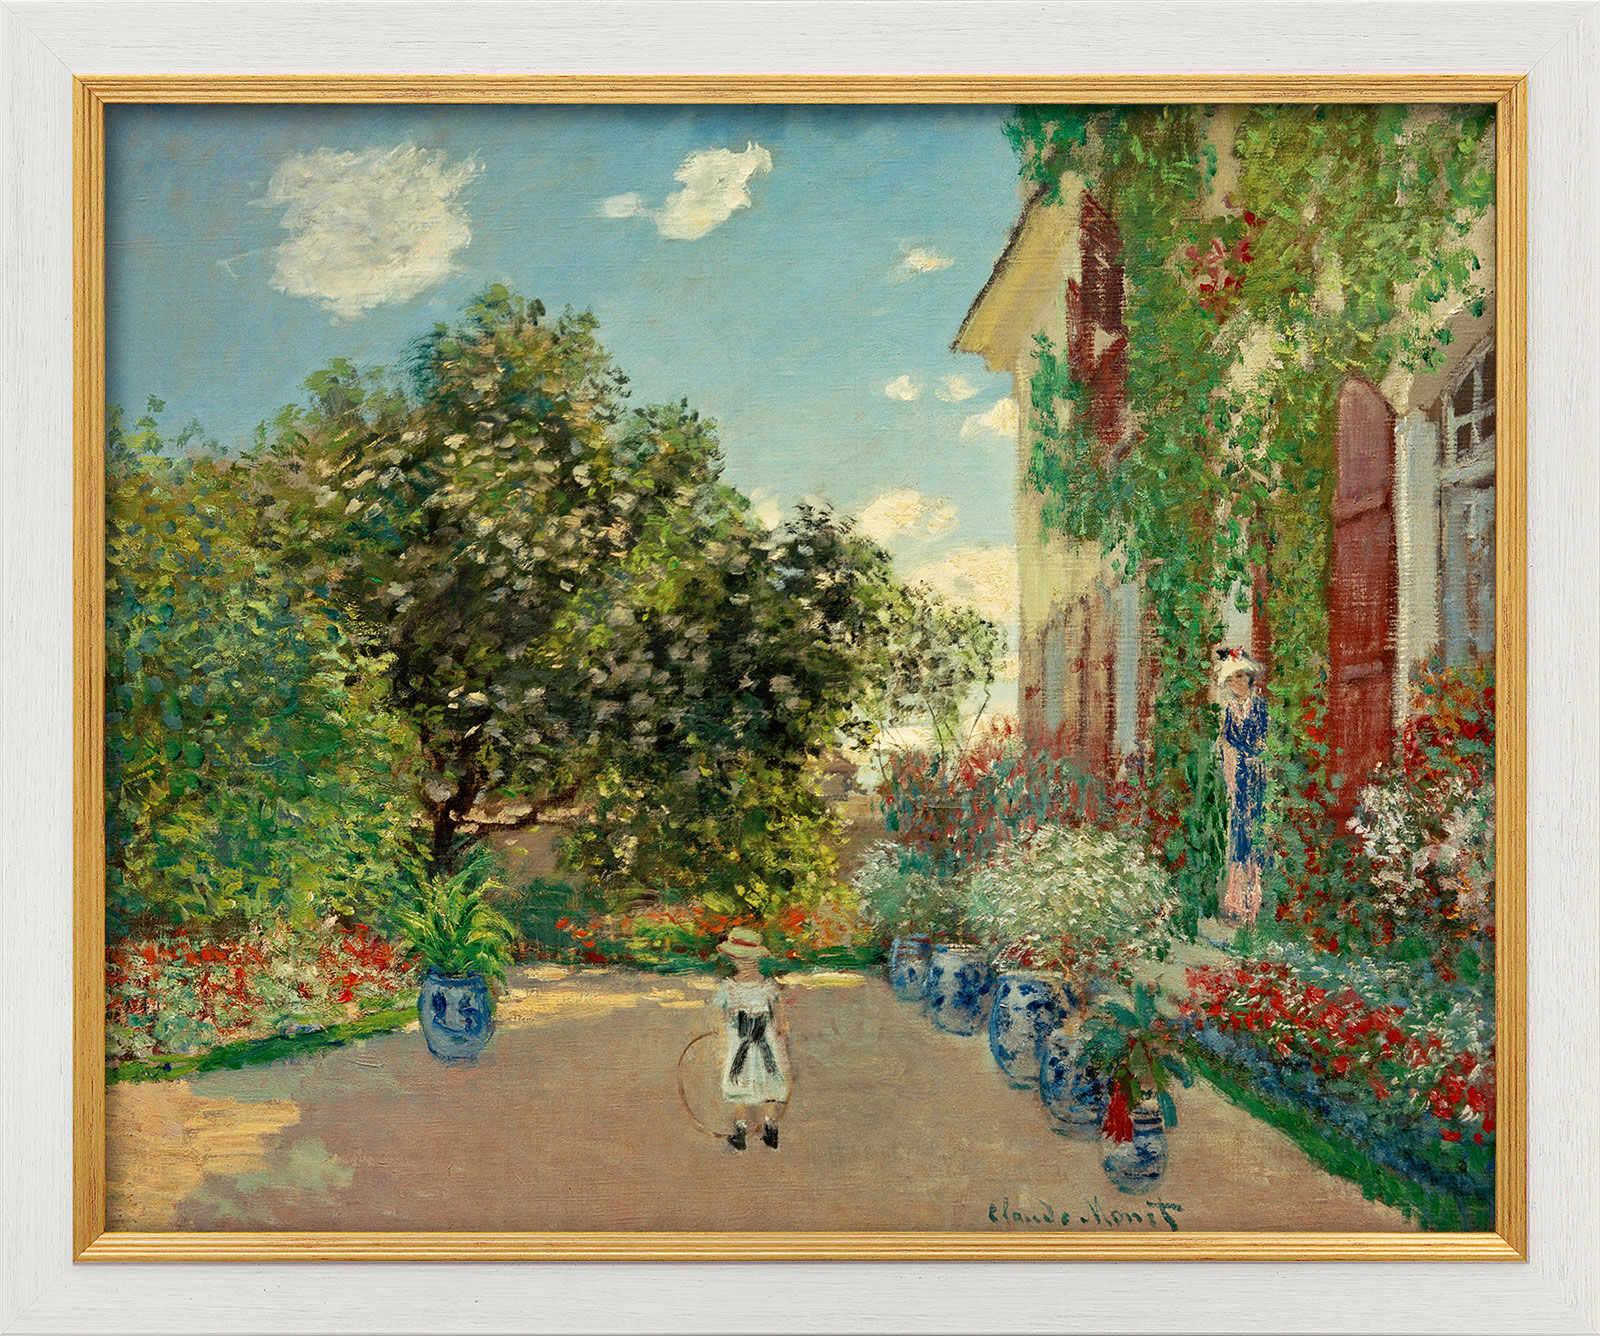 Bild "La maison de l'artiste à Argenteuil (Das Haus des Künstlers in Argenteuil)" (1873), gerahmt von Claude Monet